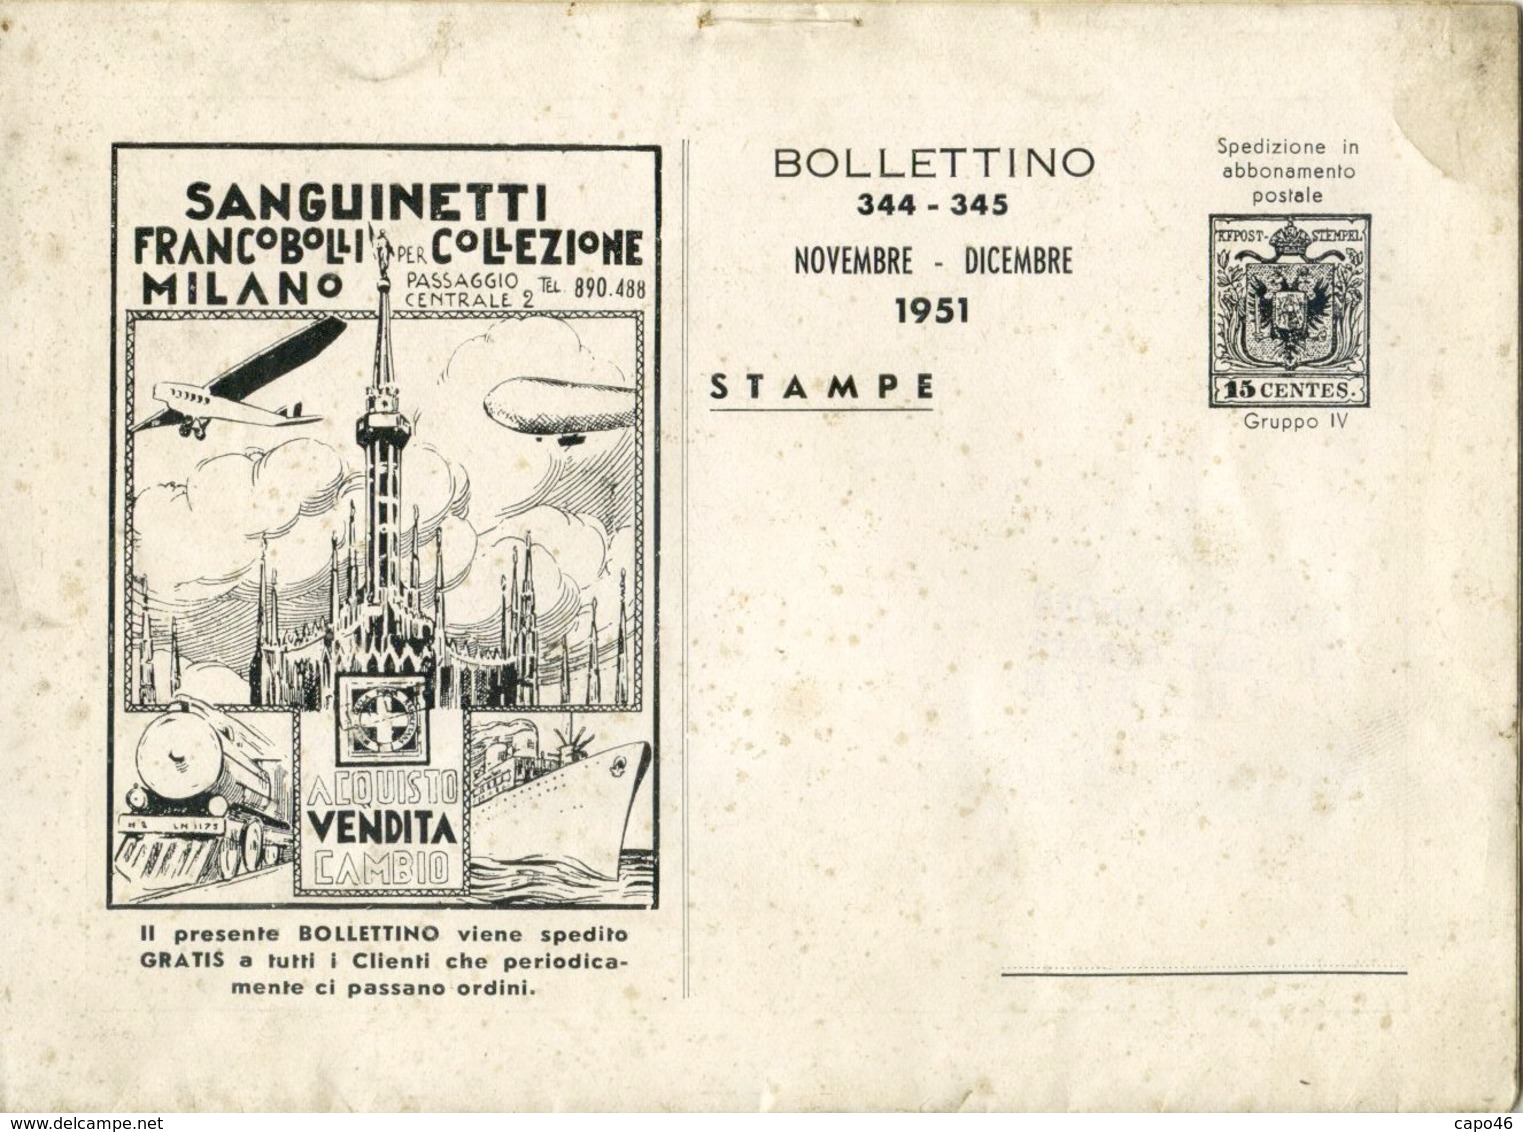 CF 14 - BOLLETTINO MENSILE NOVEMBRE DICEMBRE 1951 A. R. SANGUINETTI - 8 PAGINE + COP - Italia